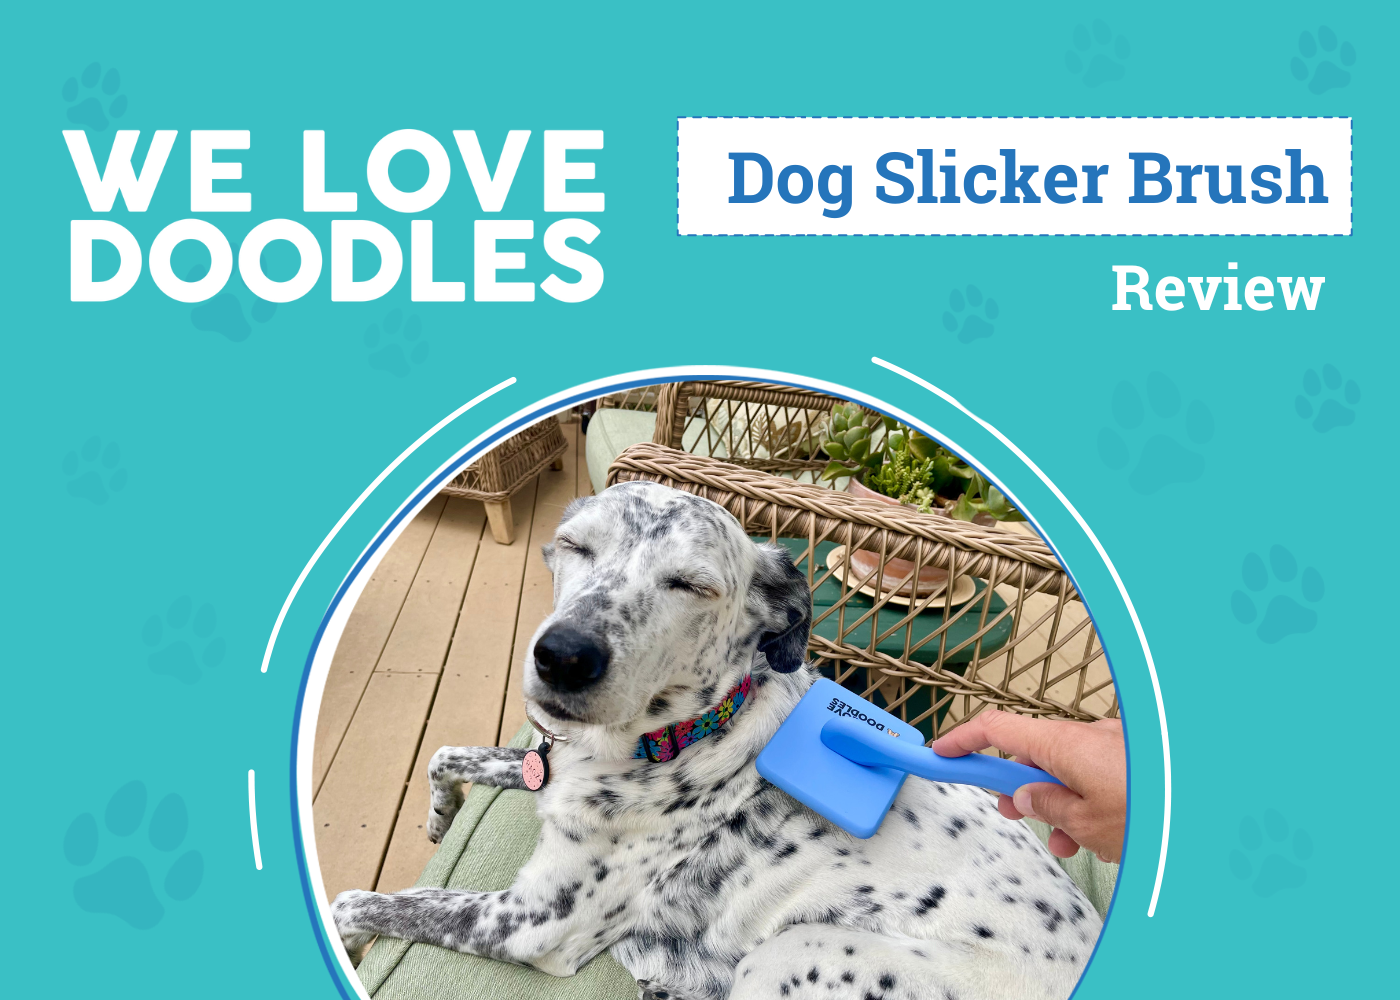 DOG_SAPR_We Love Doodles Dog Slicker Brush